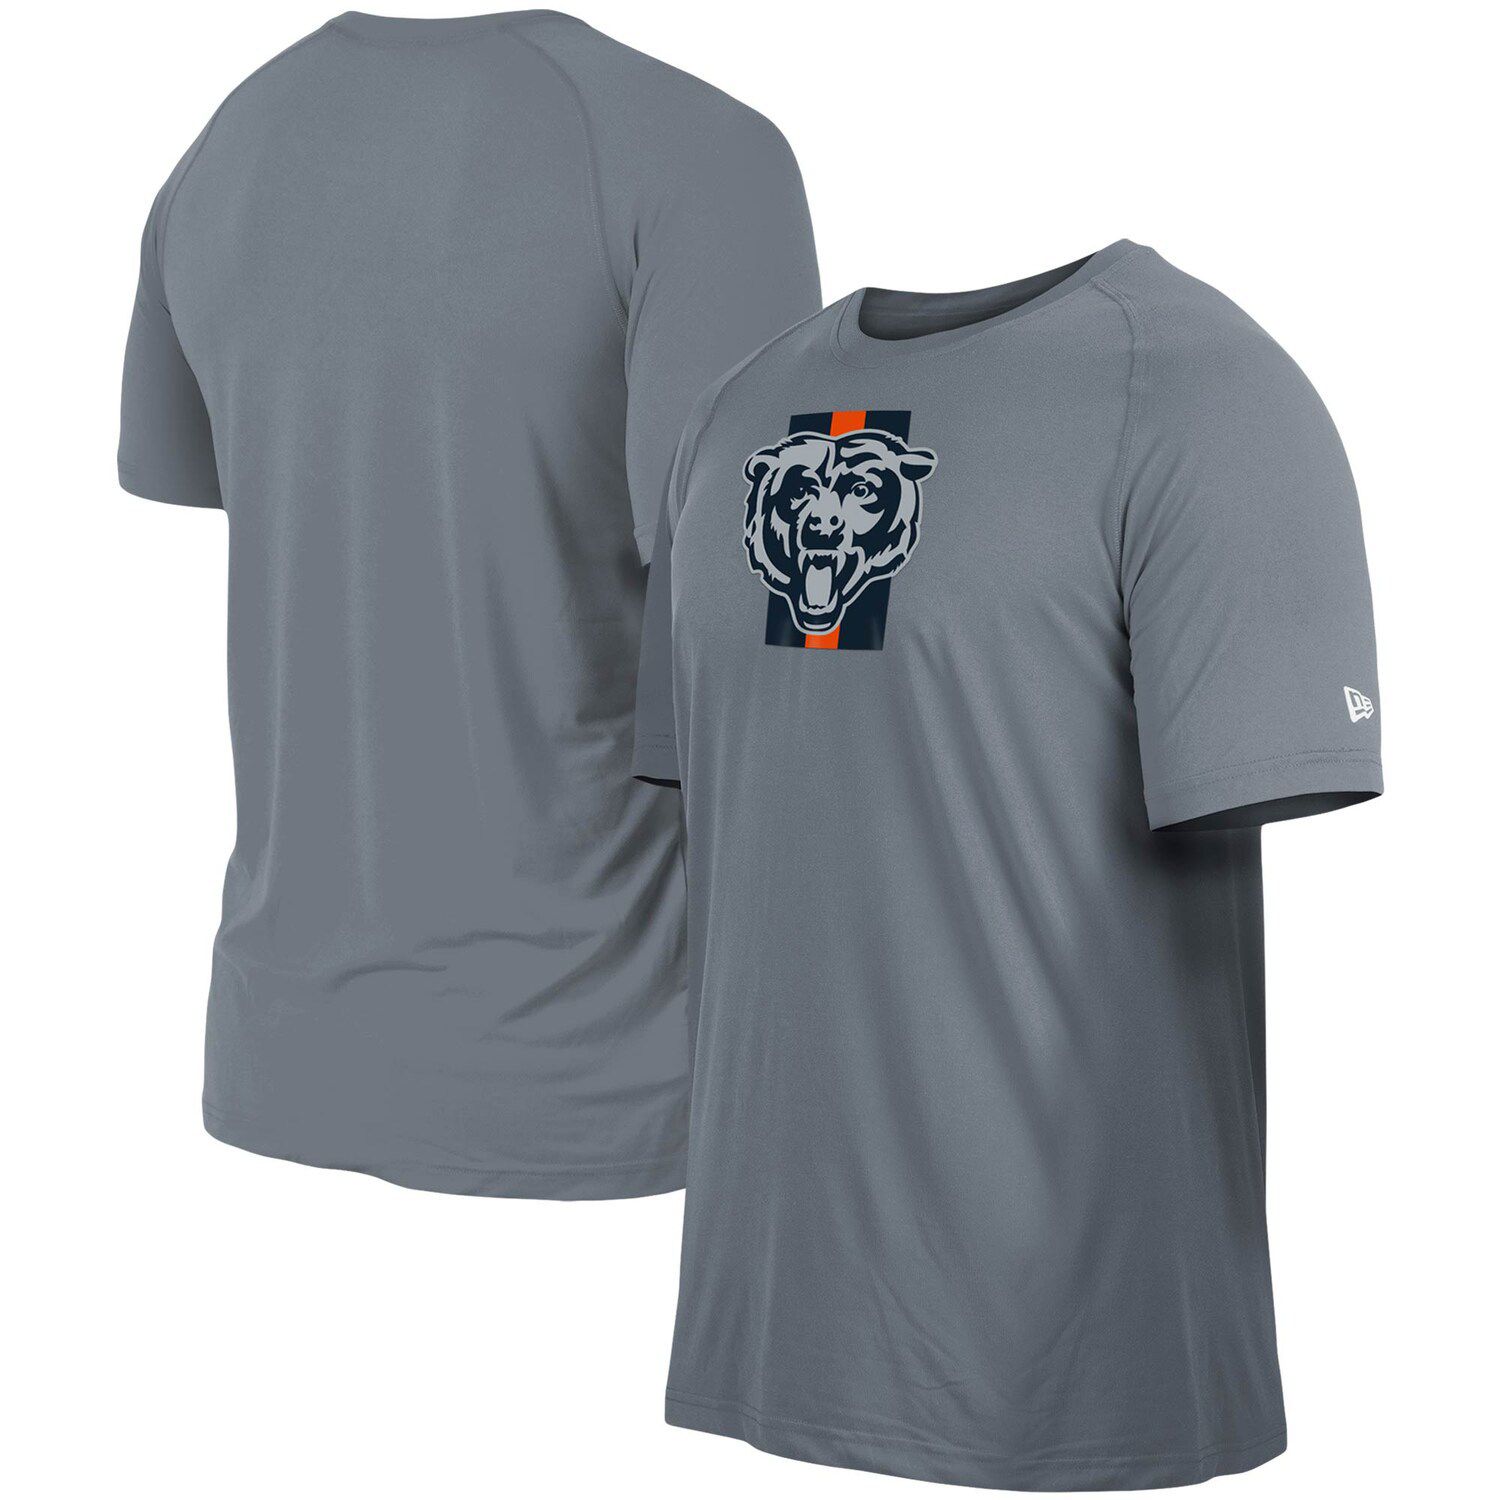 Fanatics Braves Proven Winner Camp Button-Up Shirt - Men's